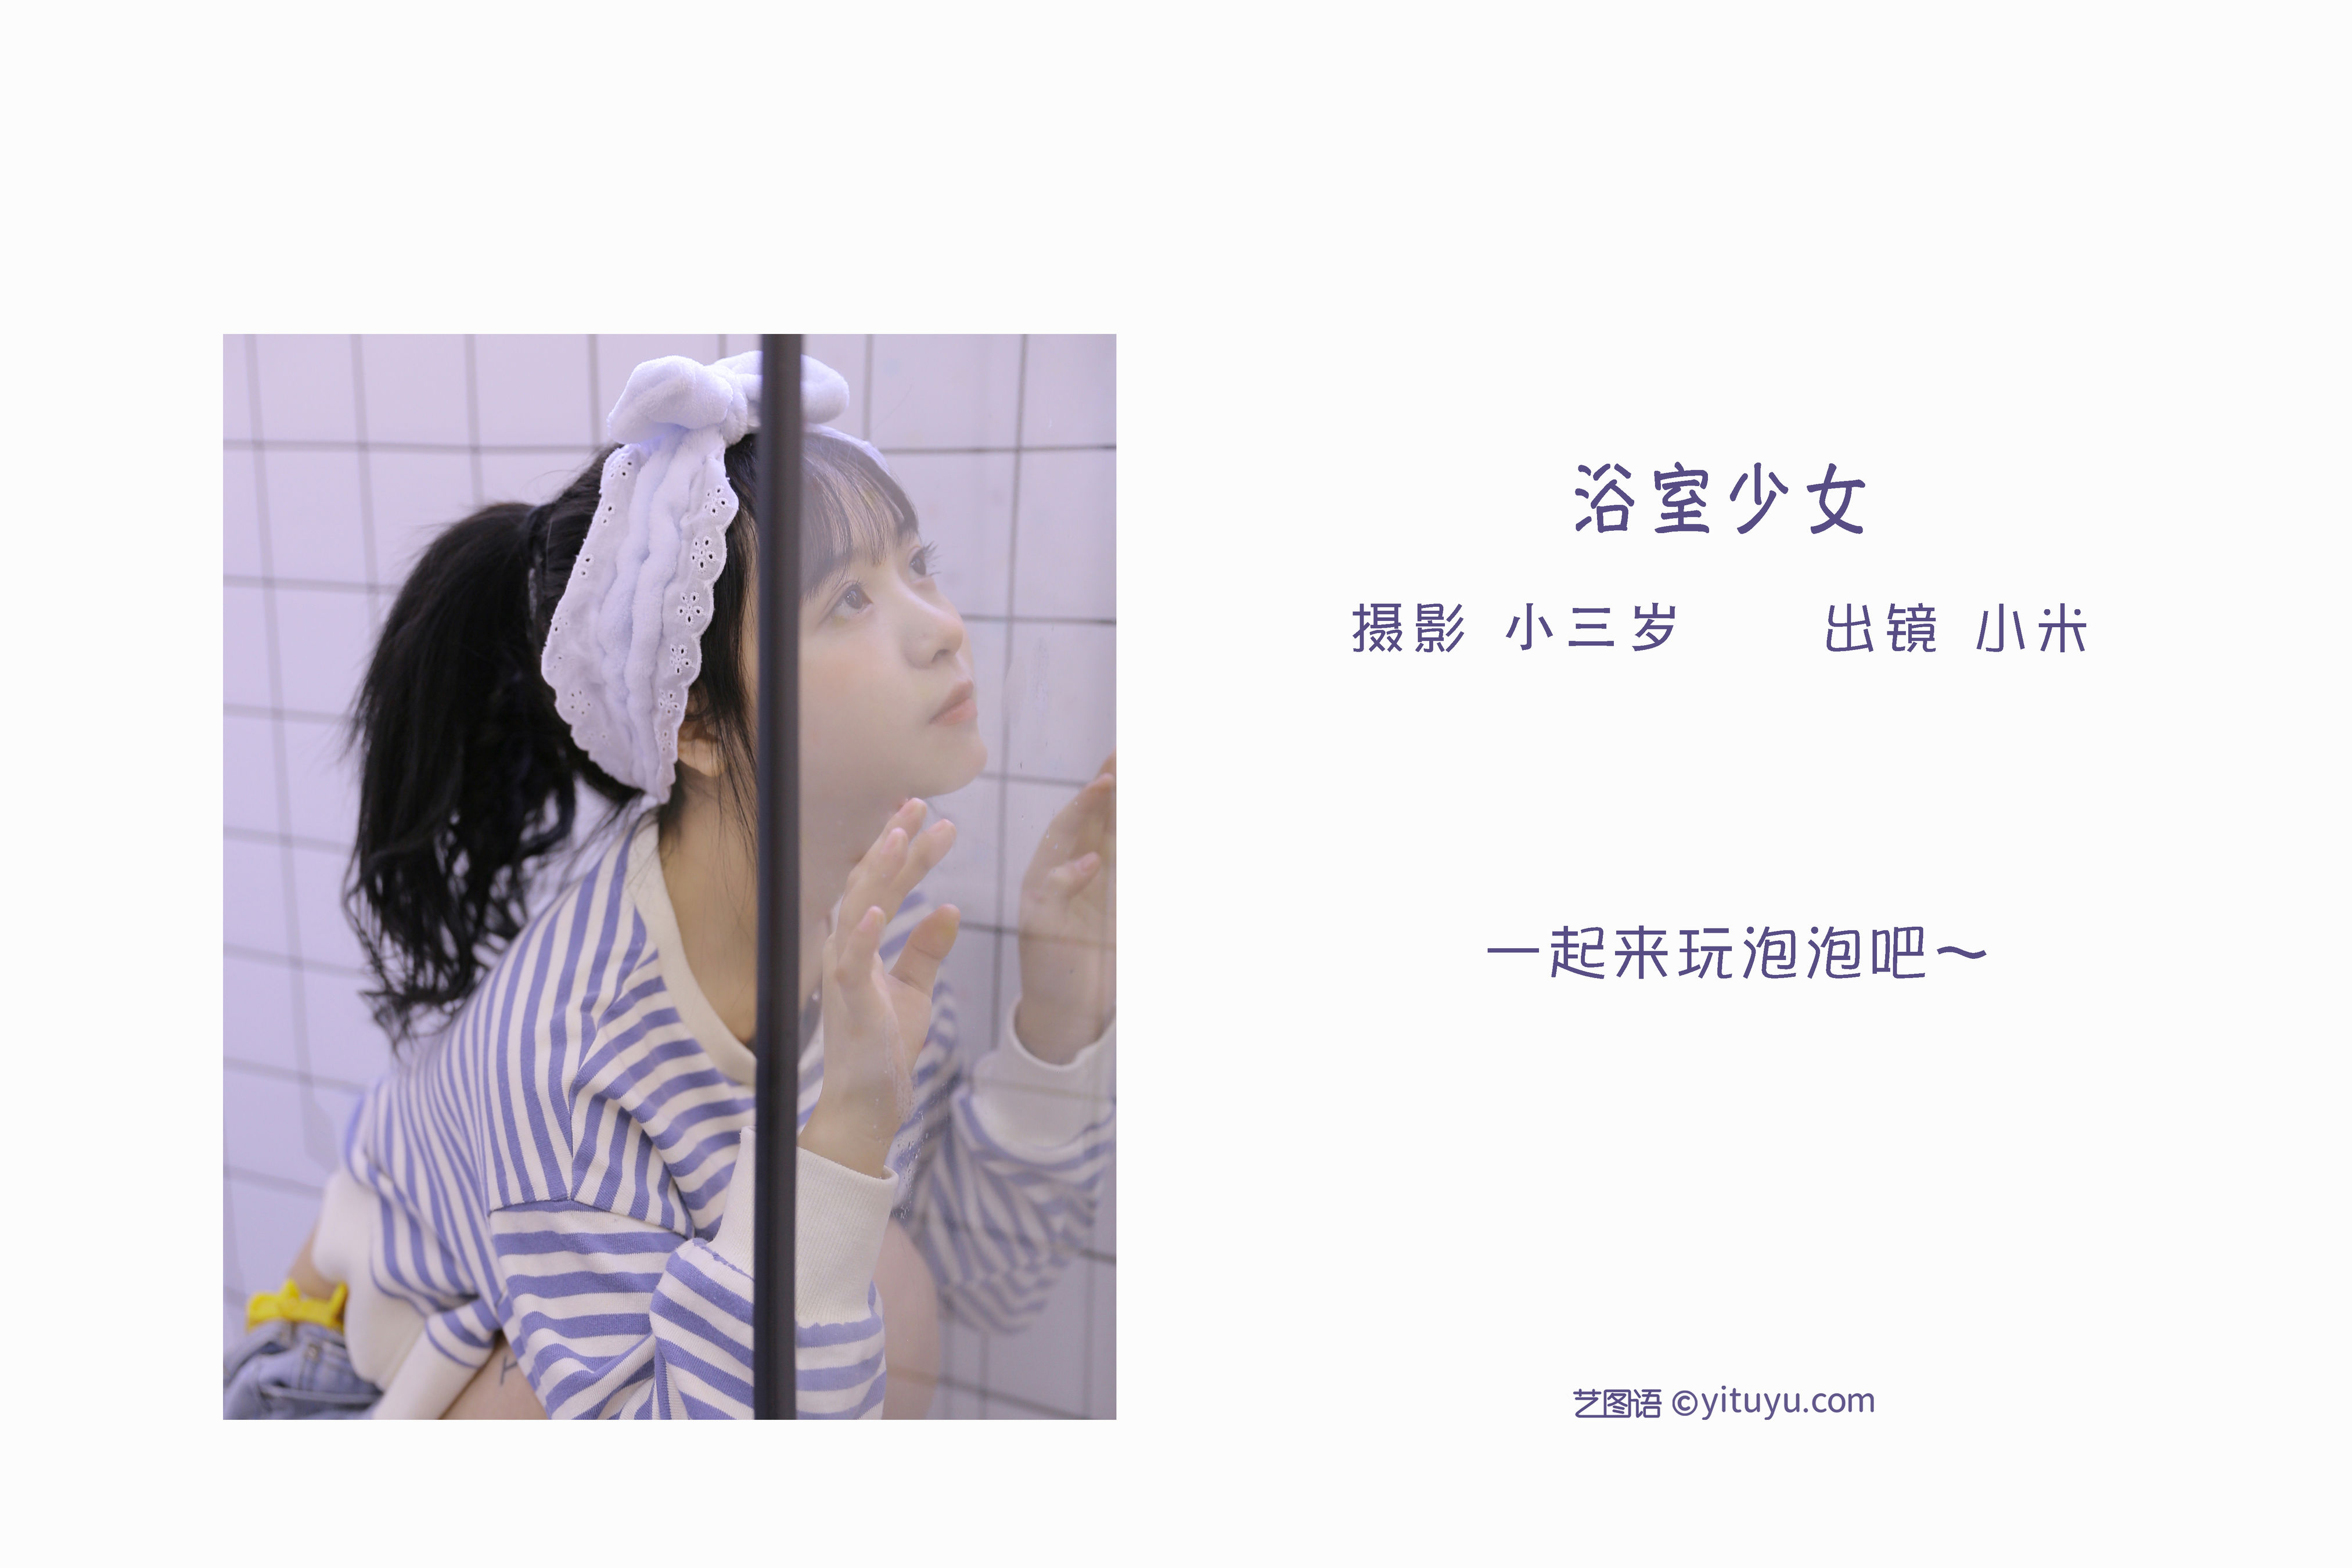 浴室少女 少女 写真集&YiTuYu艺图语-2